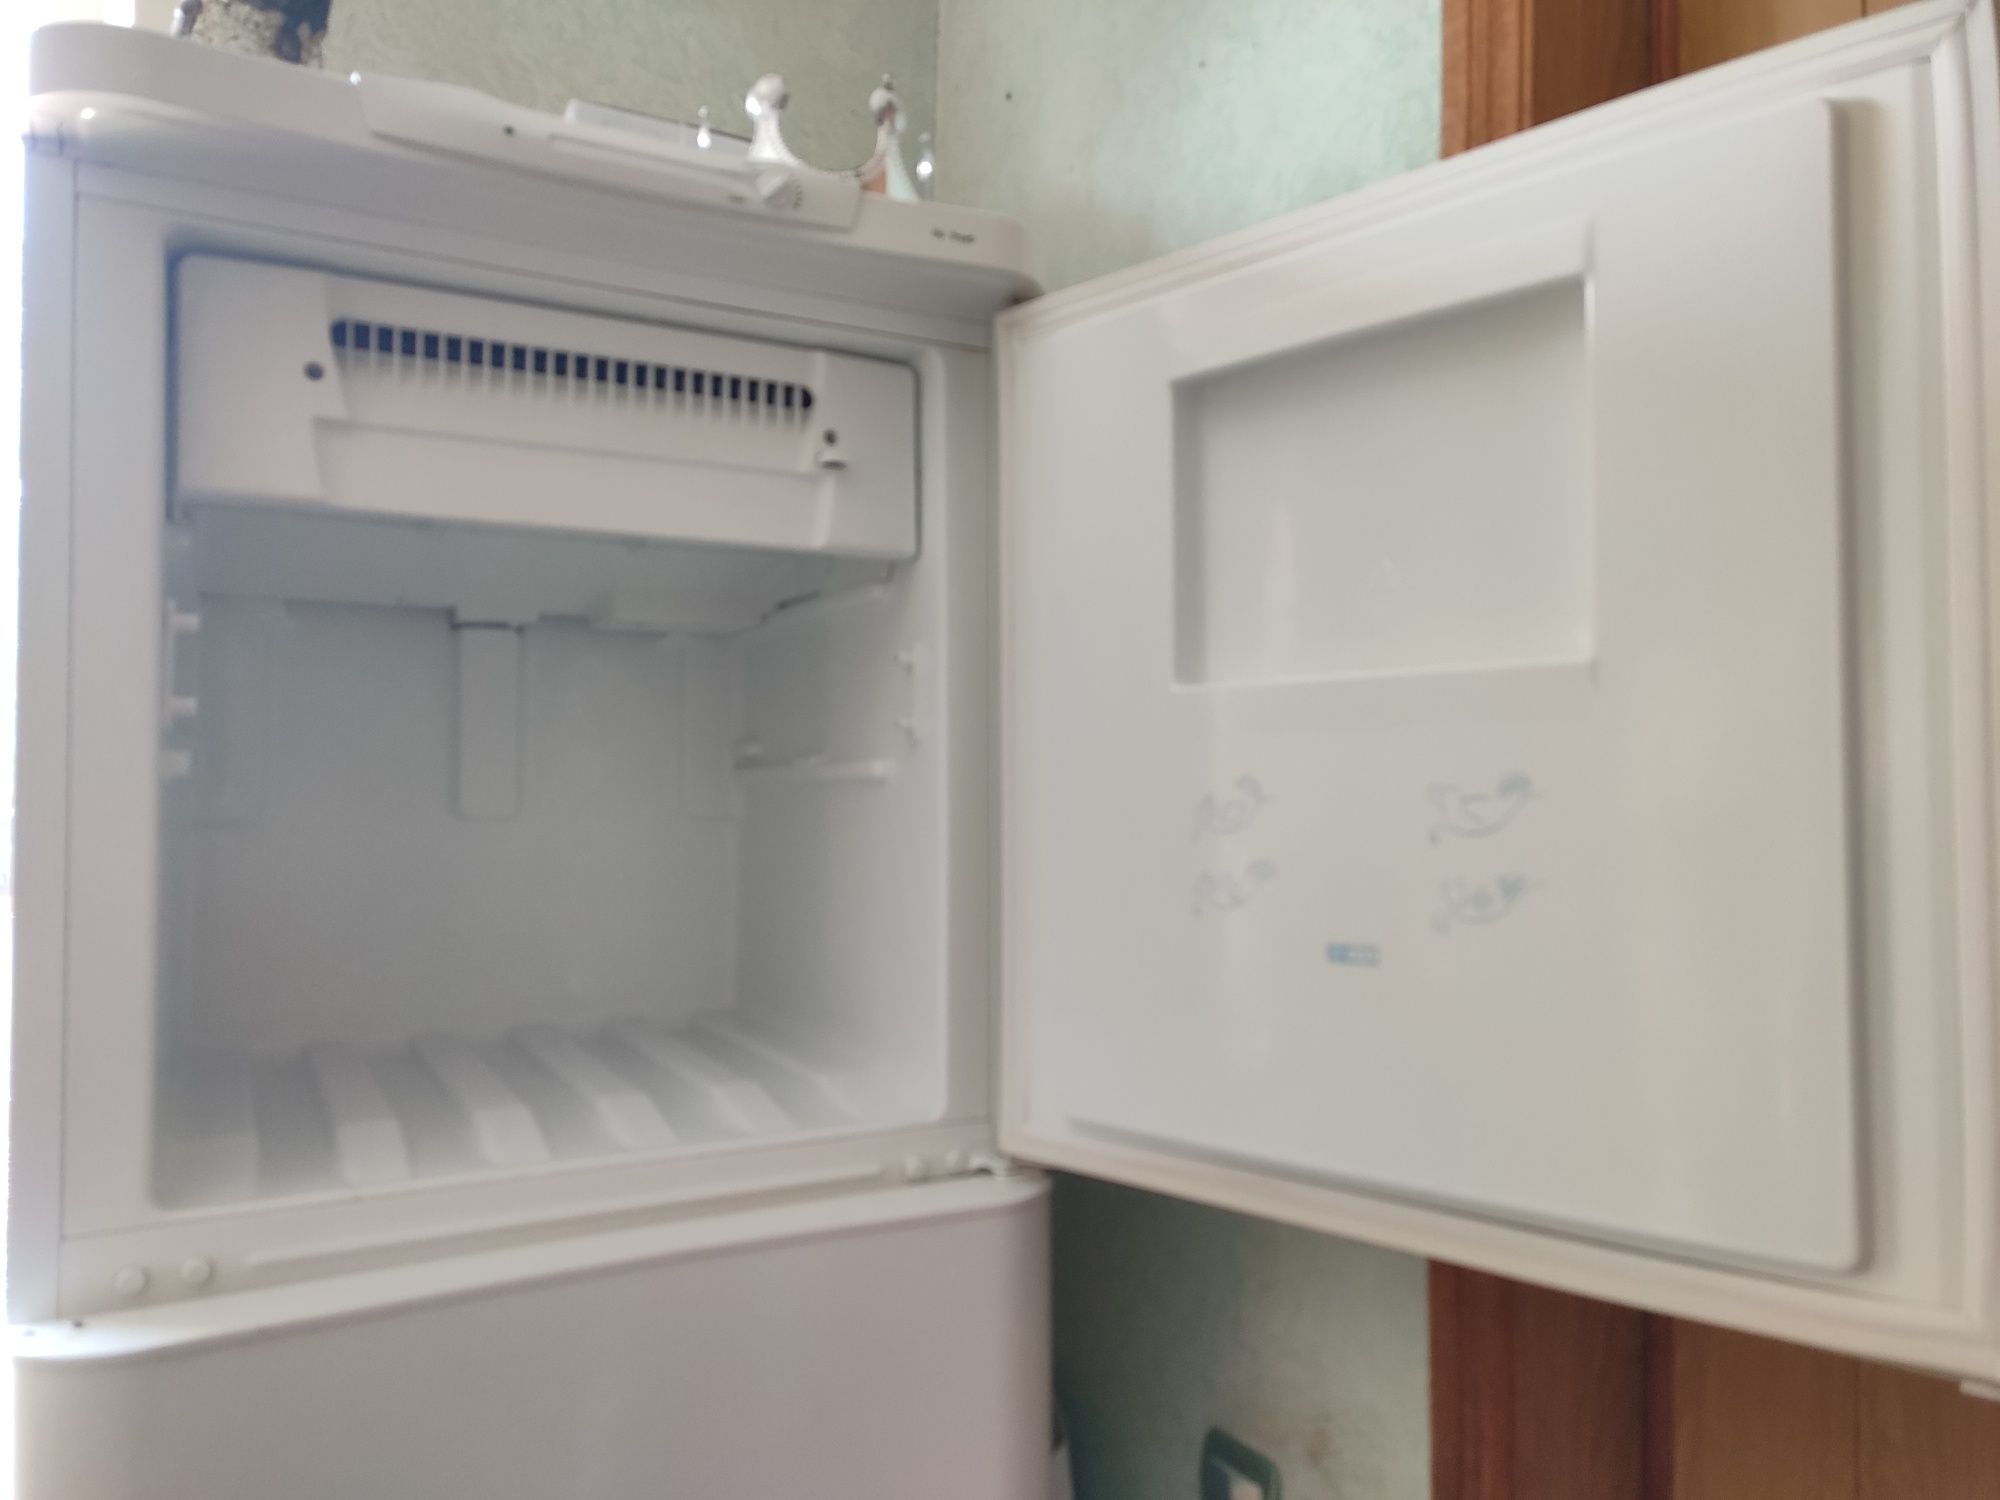 Продам холодильник двухкамерный Indesit большой